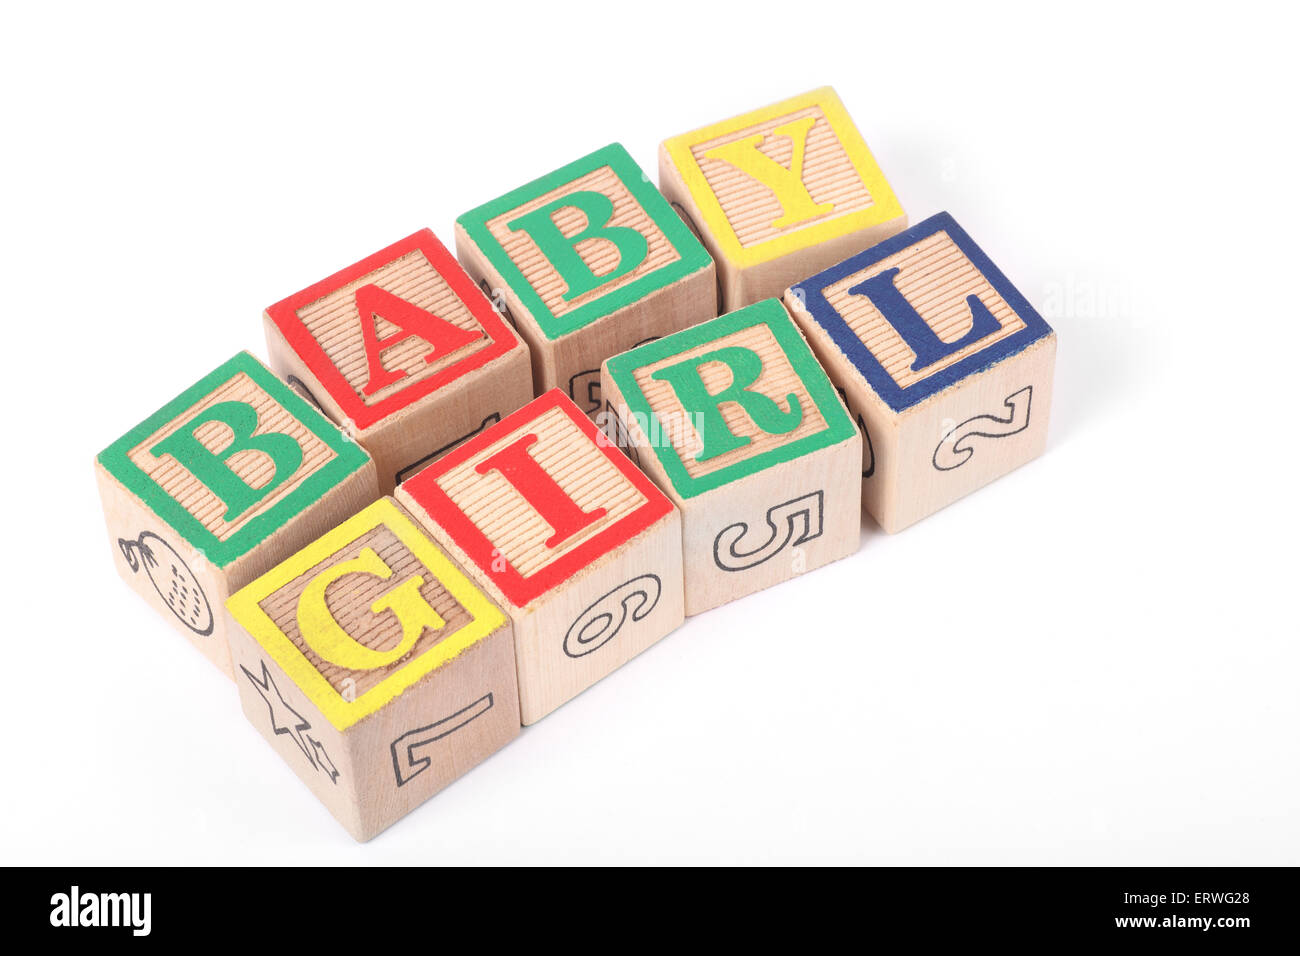 La parola "Baby girl' enunciato con bambini i blocchi di costruzione Foto Stock